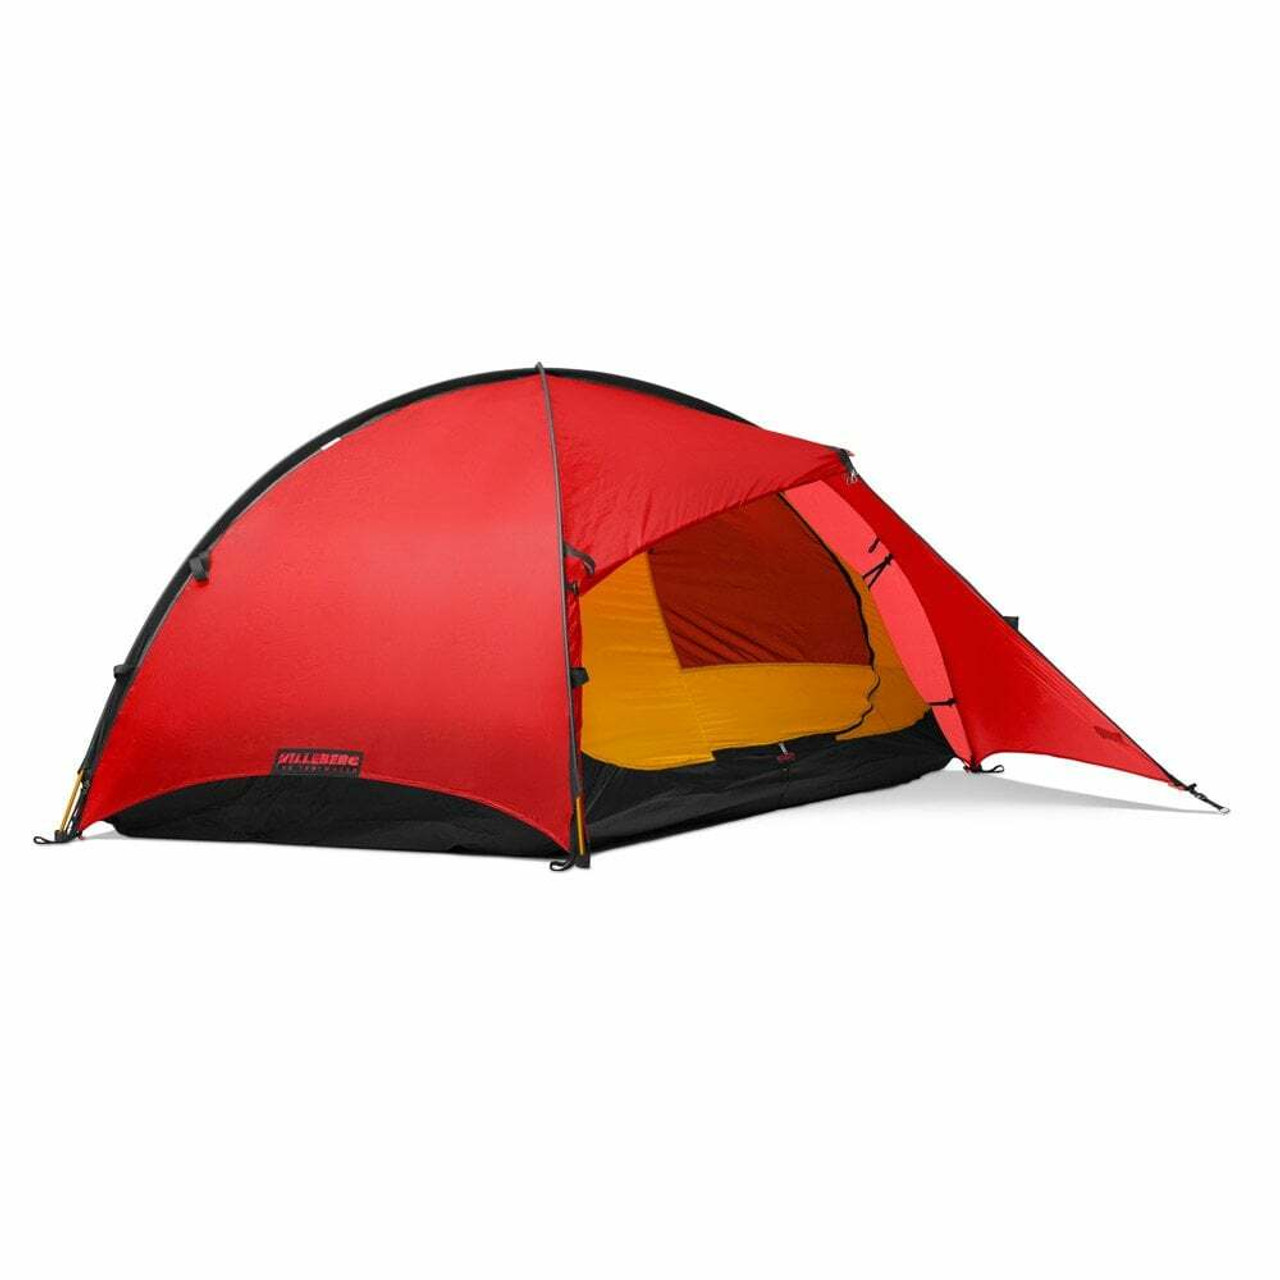 Hilleberg Rogen 2 Person Tent | UK | Ultralight Outdoor Gear